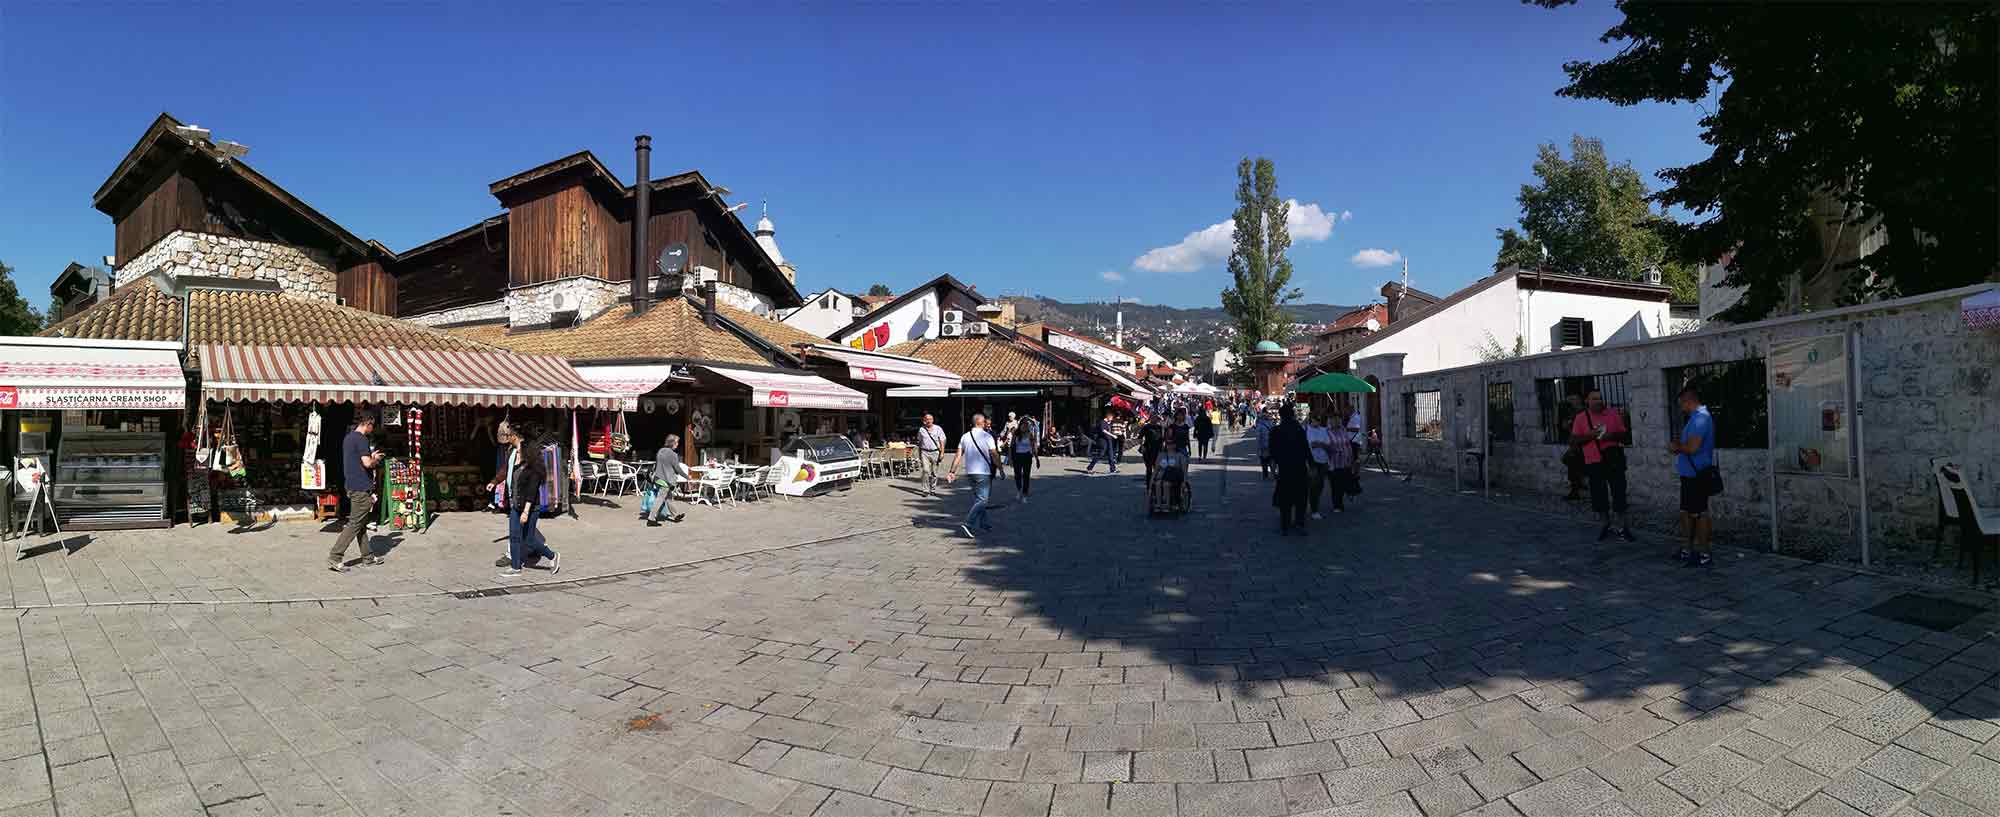 tržiště v Sarajevu, Bosna a Hercegovina